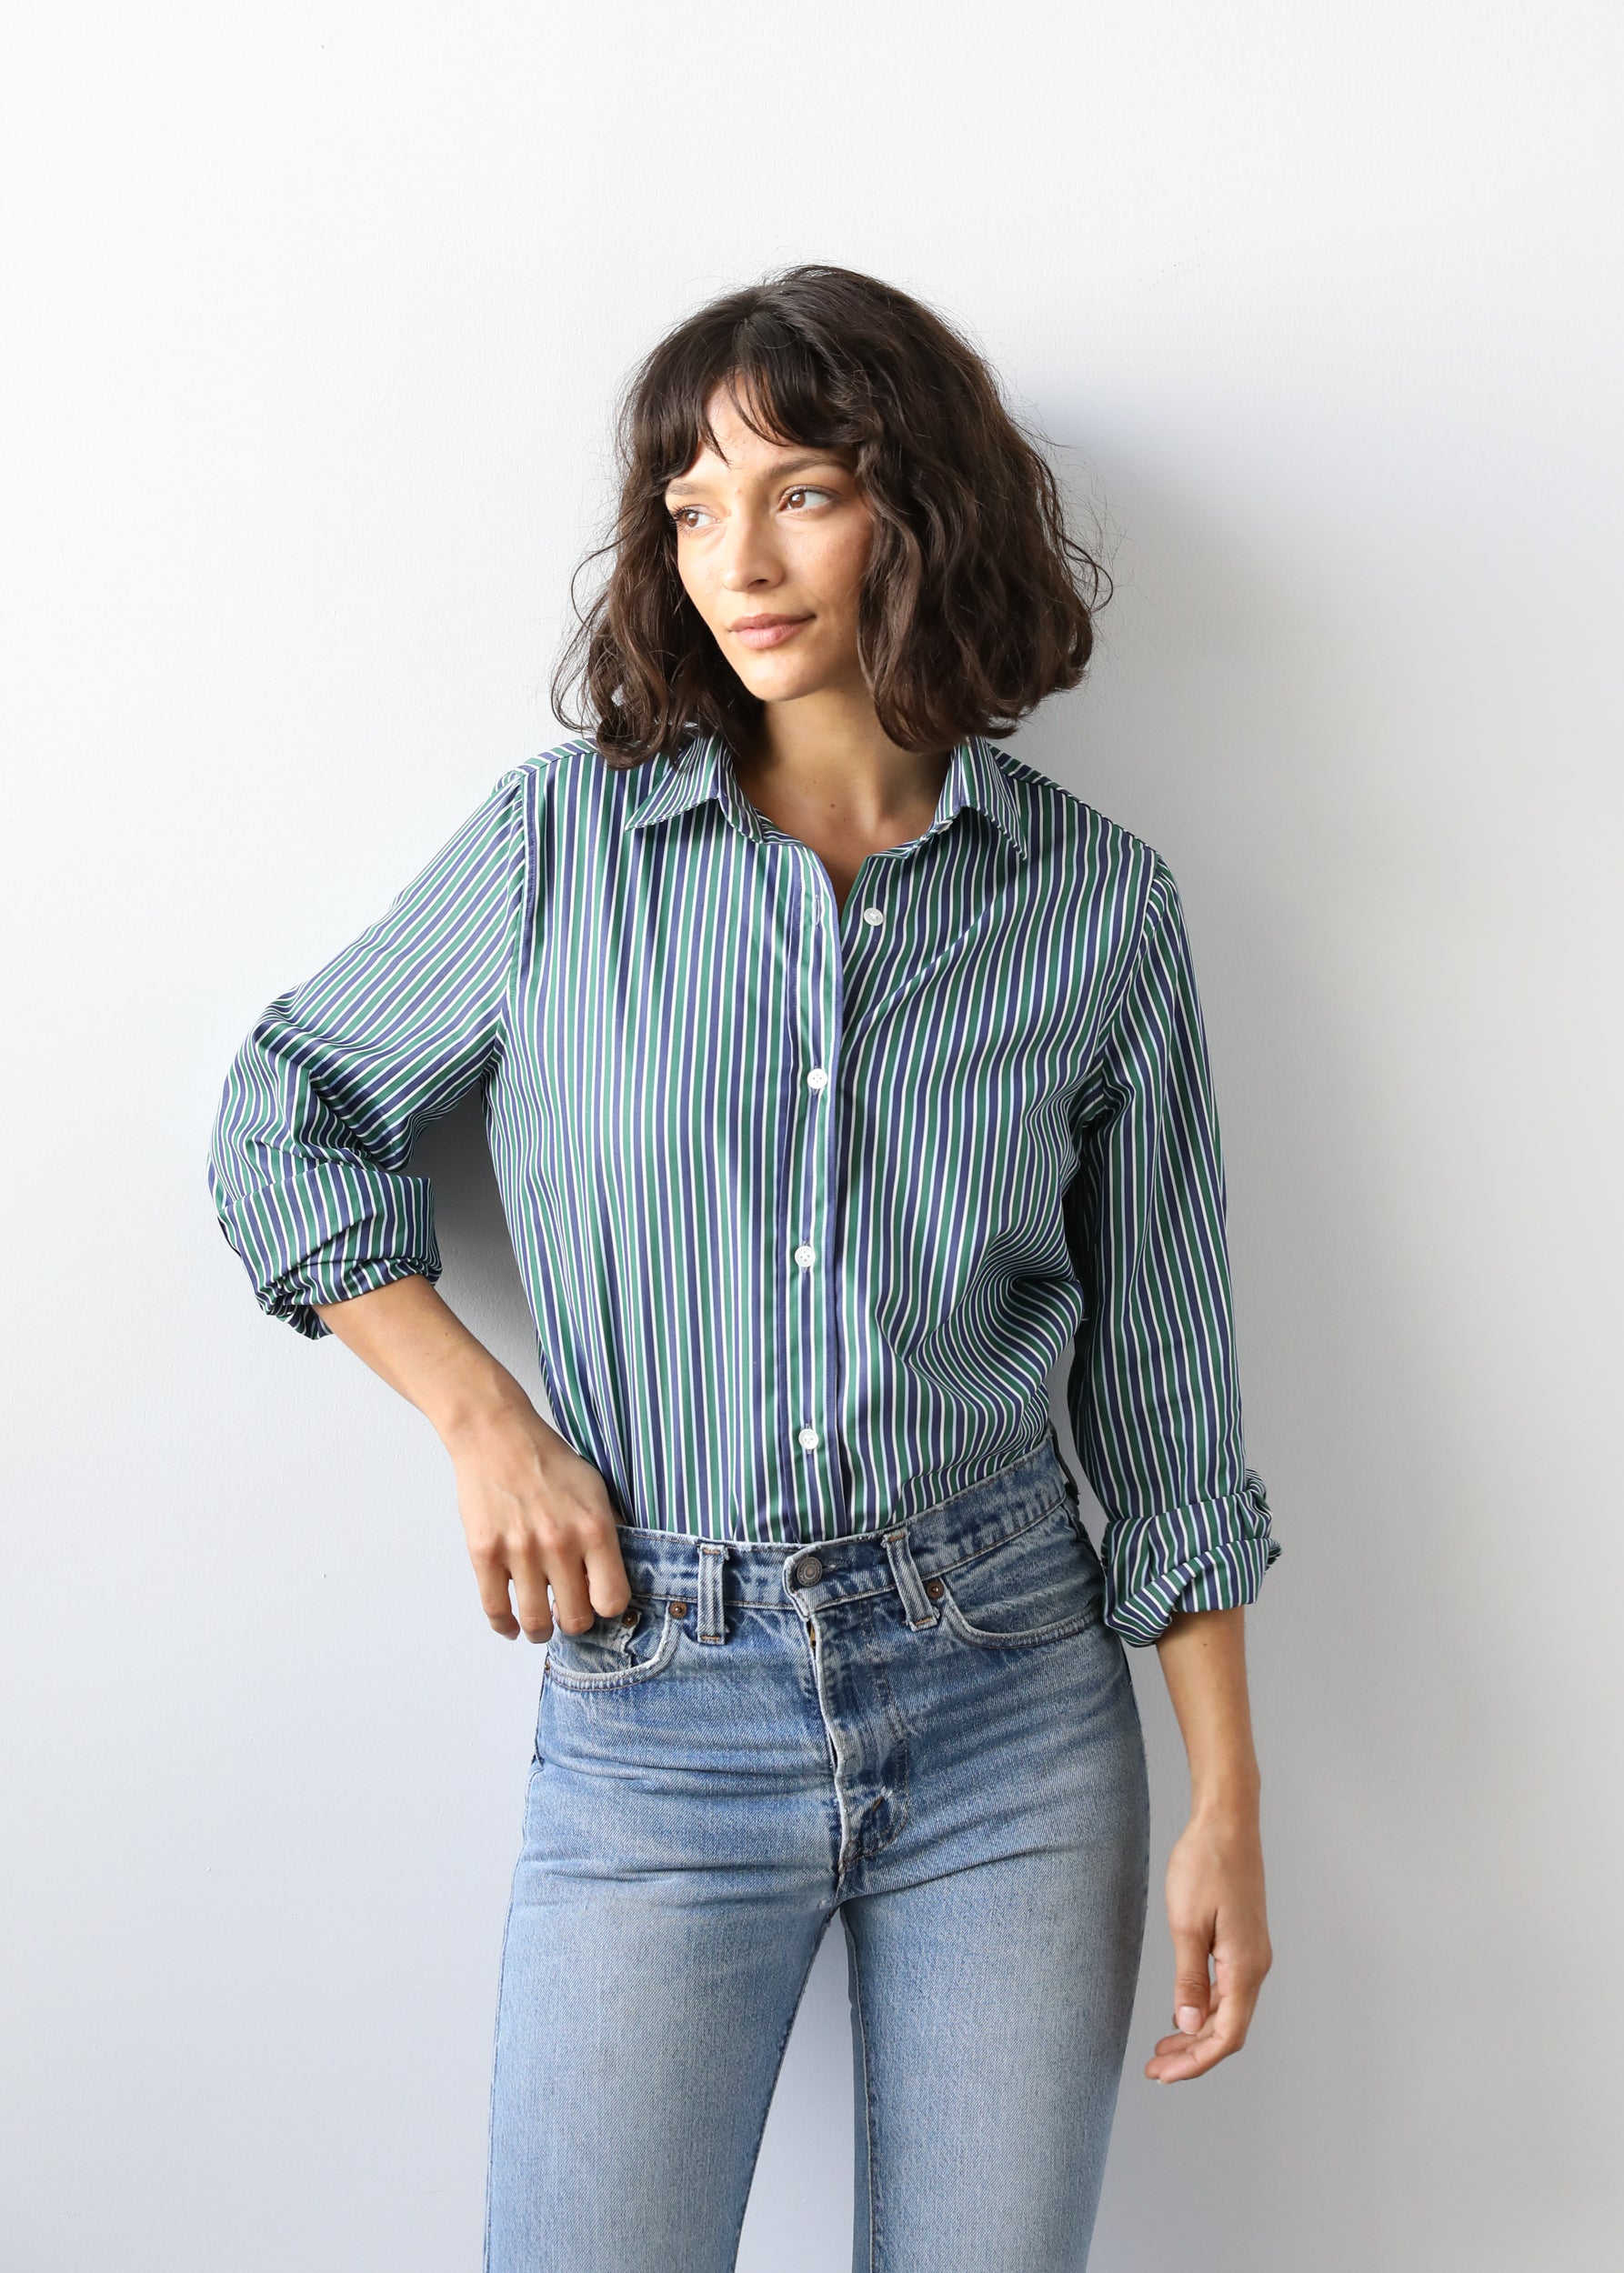 Estella NYC Gemma Button Up Shirt in Pine Stripe Cotton Poplin